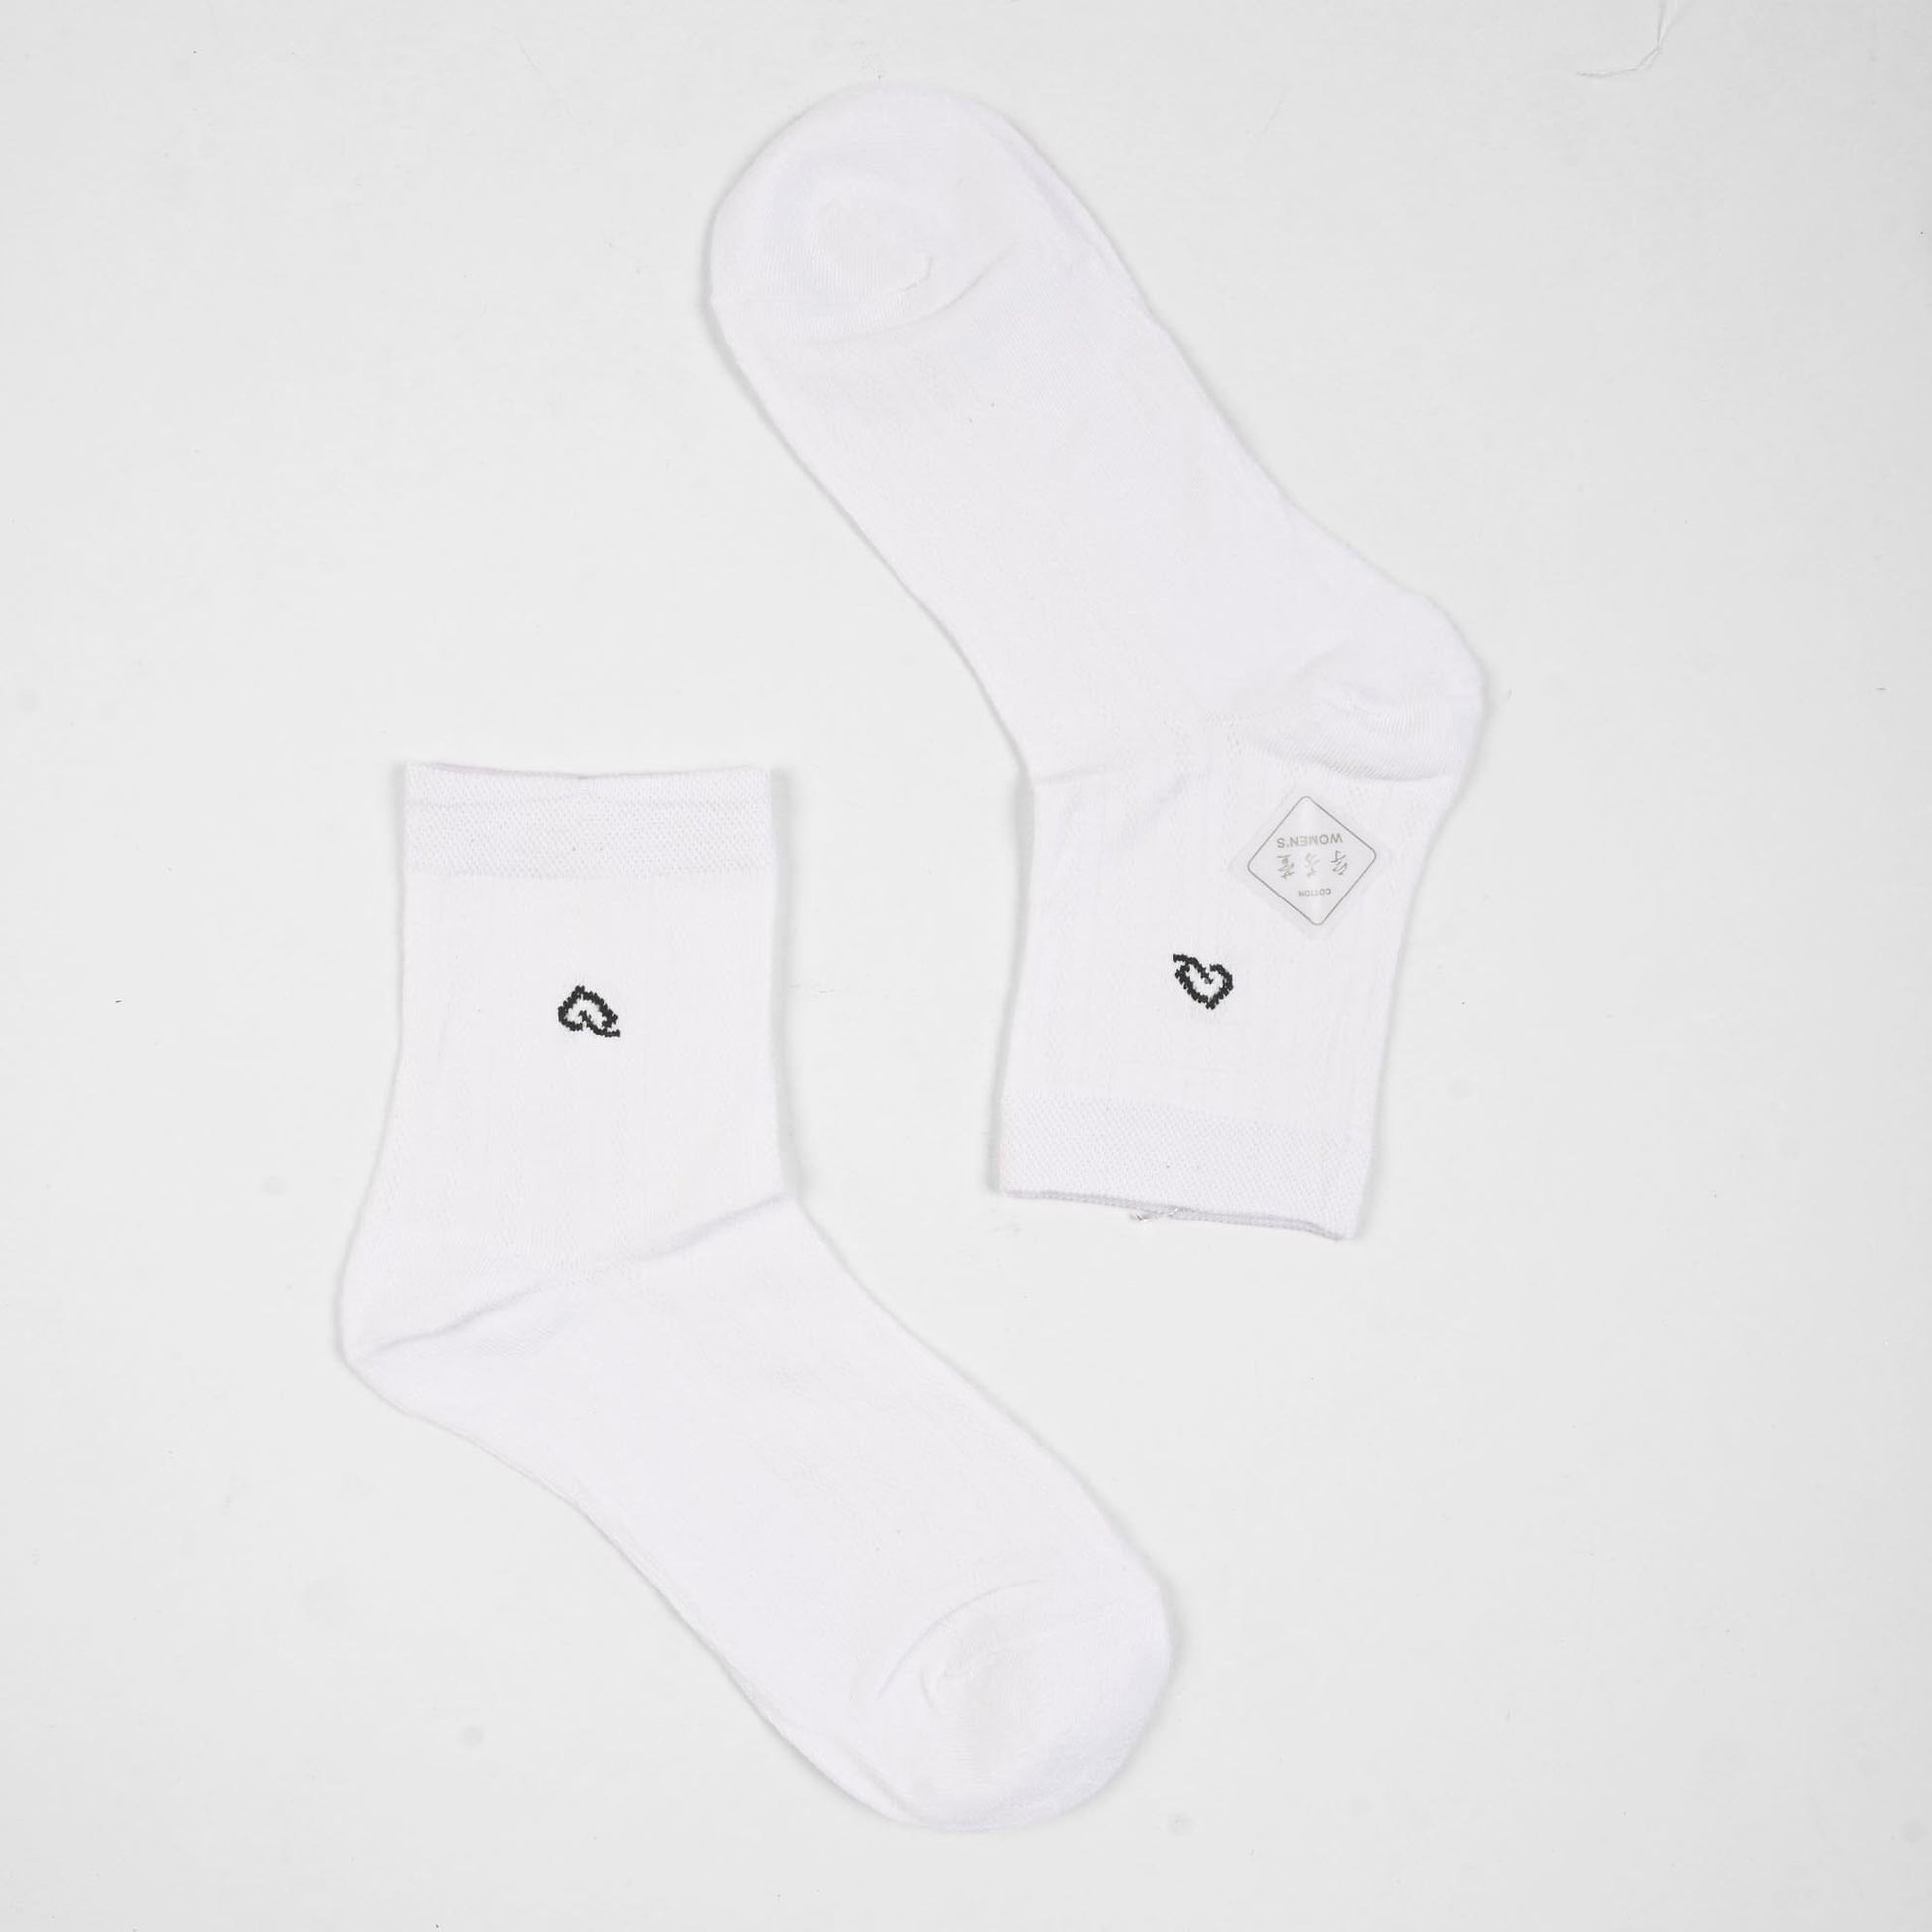 Vienna Women's Graz Anklet Socks Socks SRL White D2 EUR 35-40